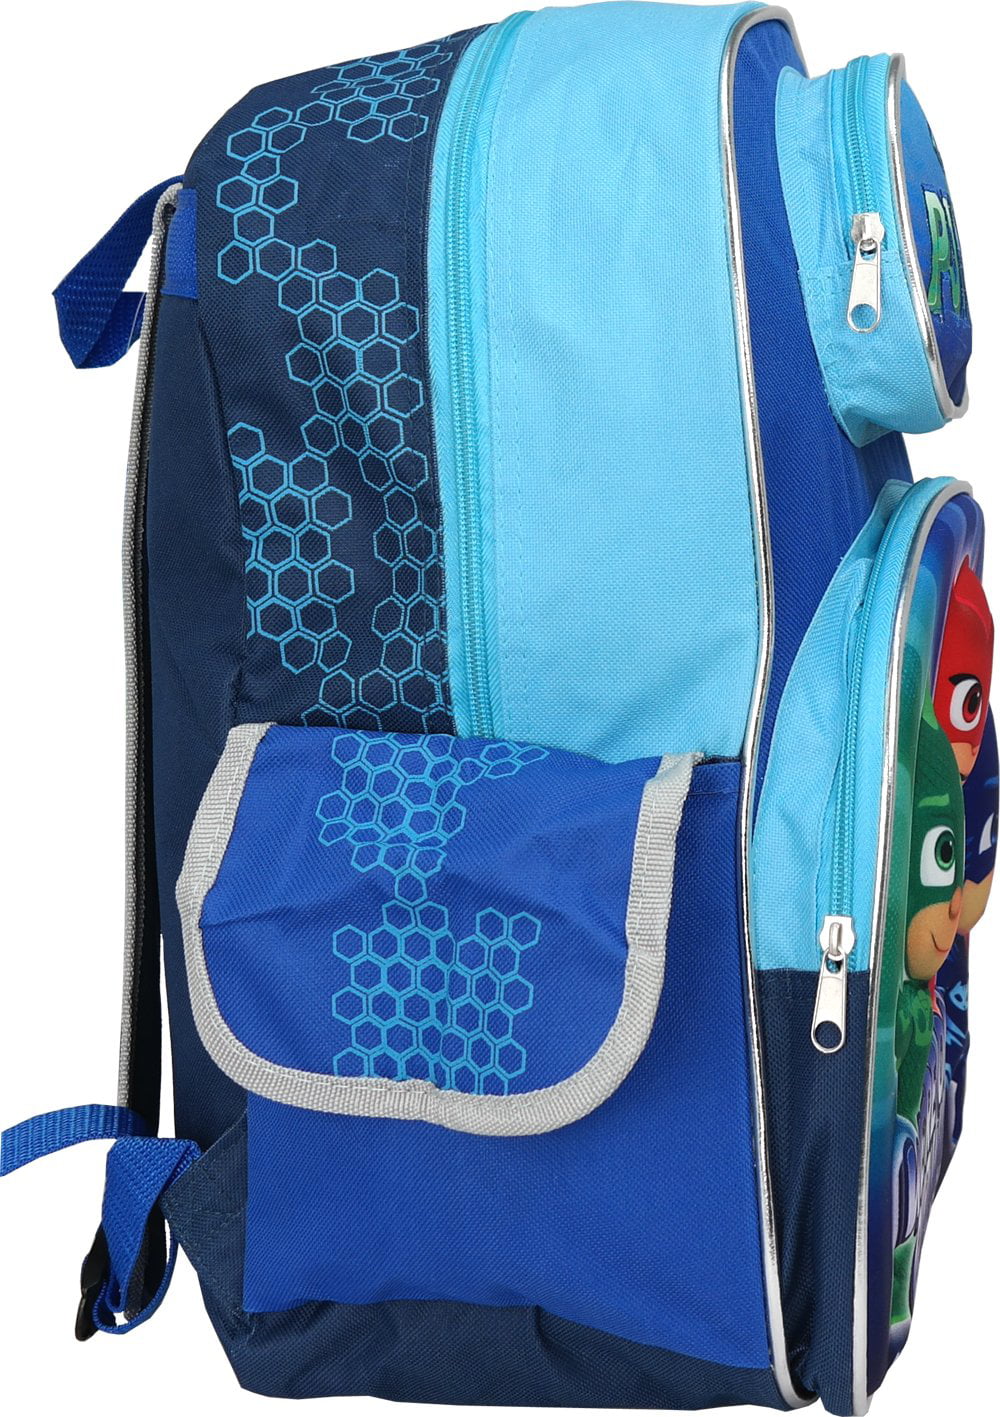 3D Pop-up We're on Our Way 16" School Bag 150819 Backpack PJ Mask 